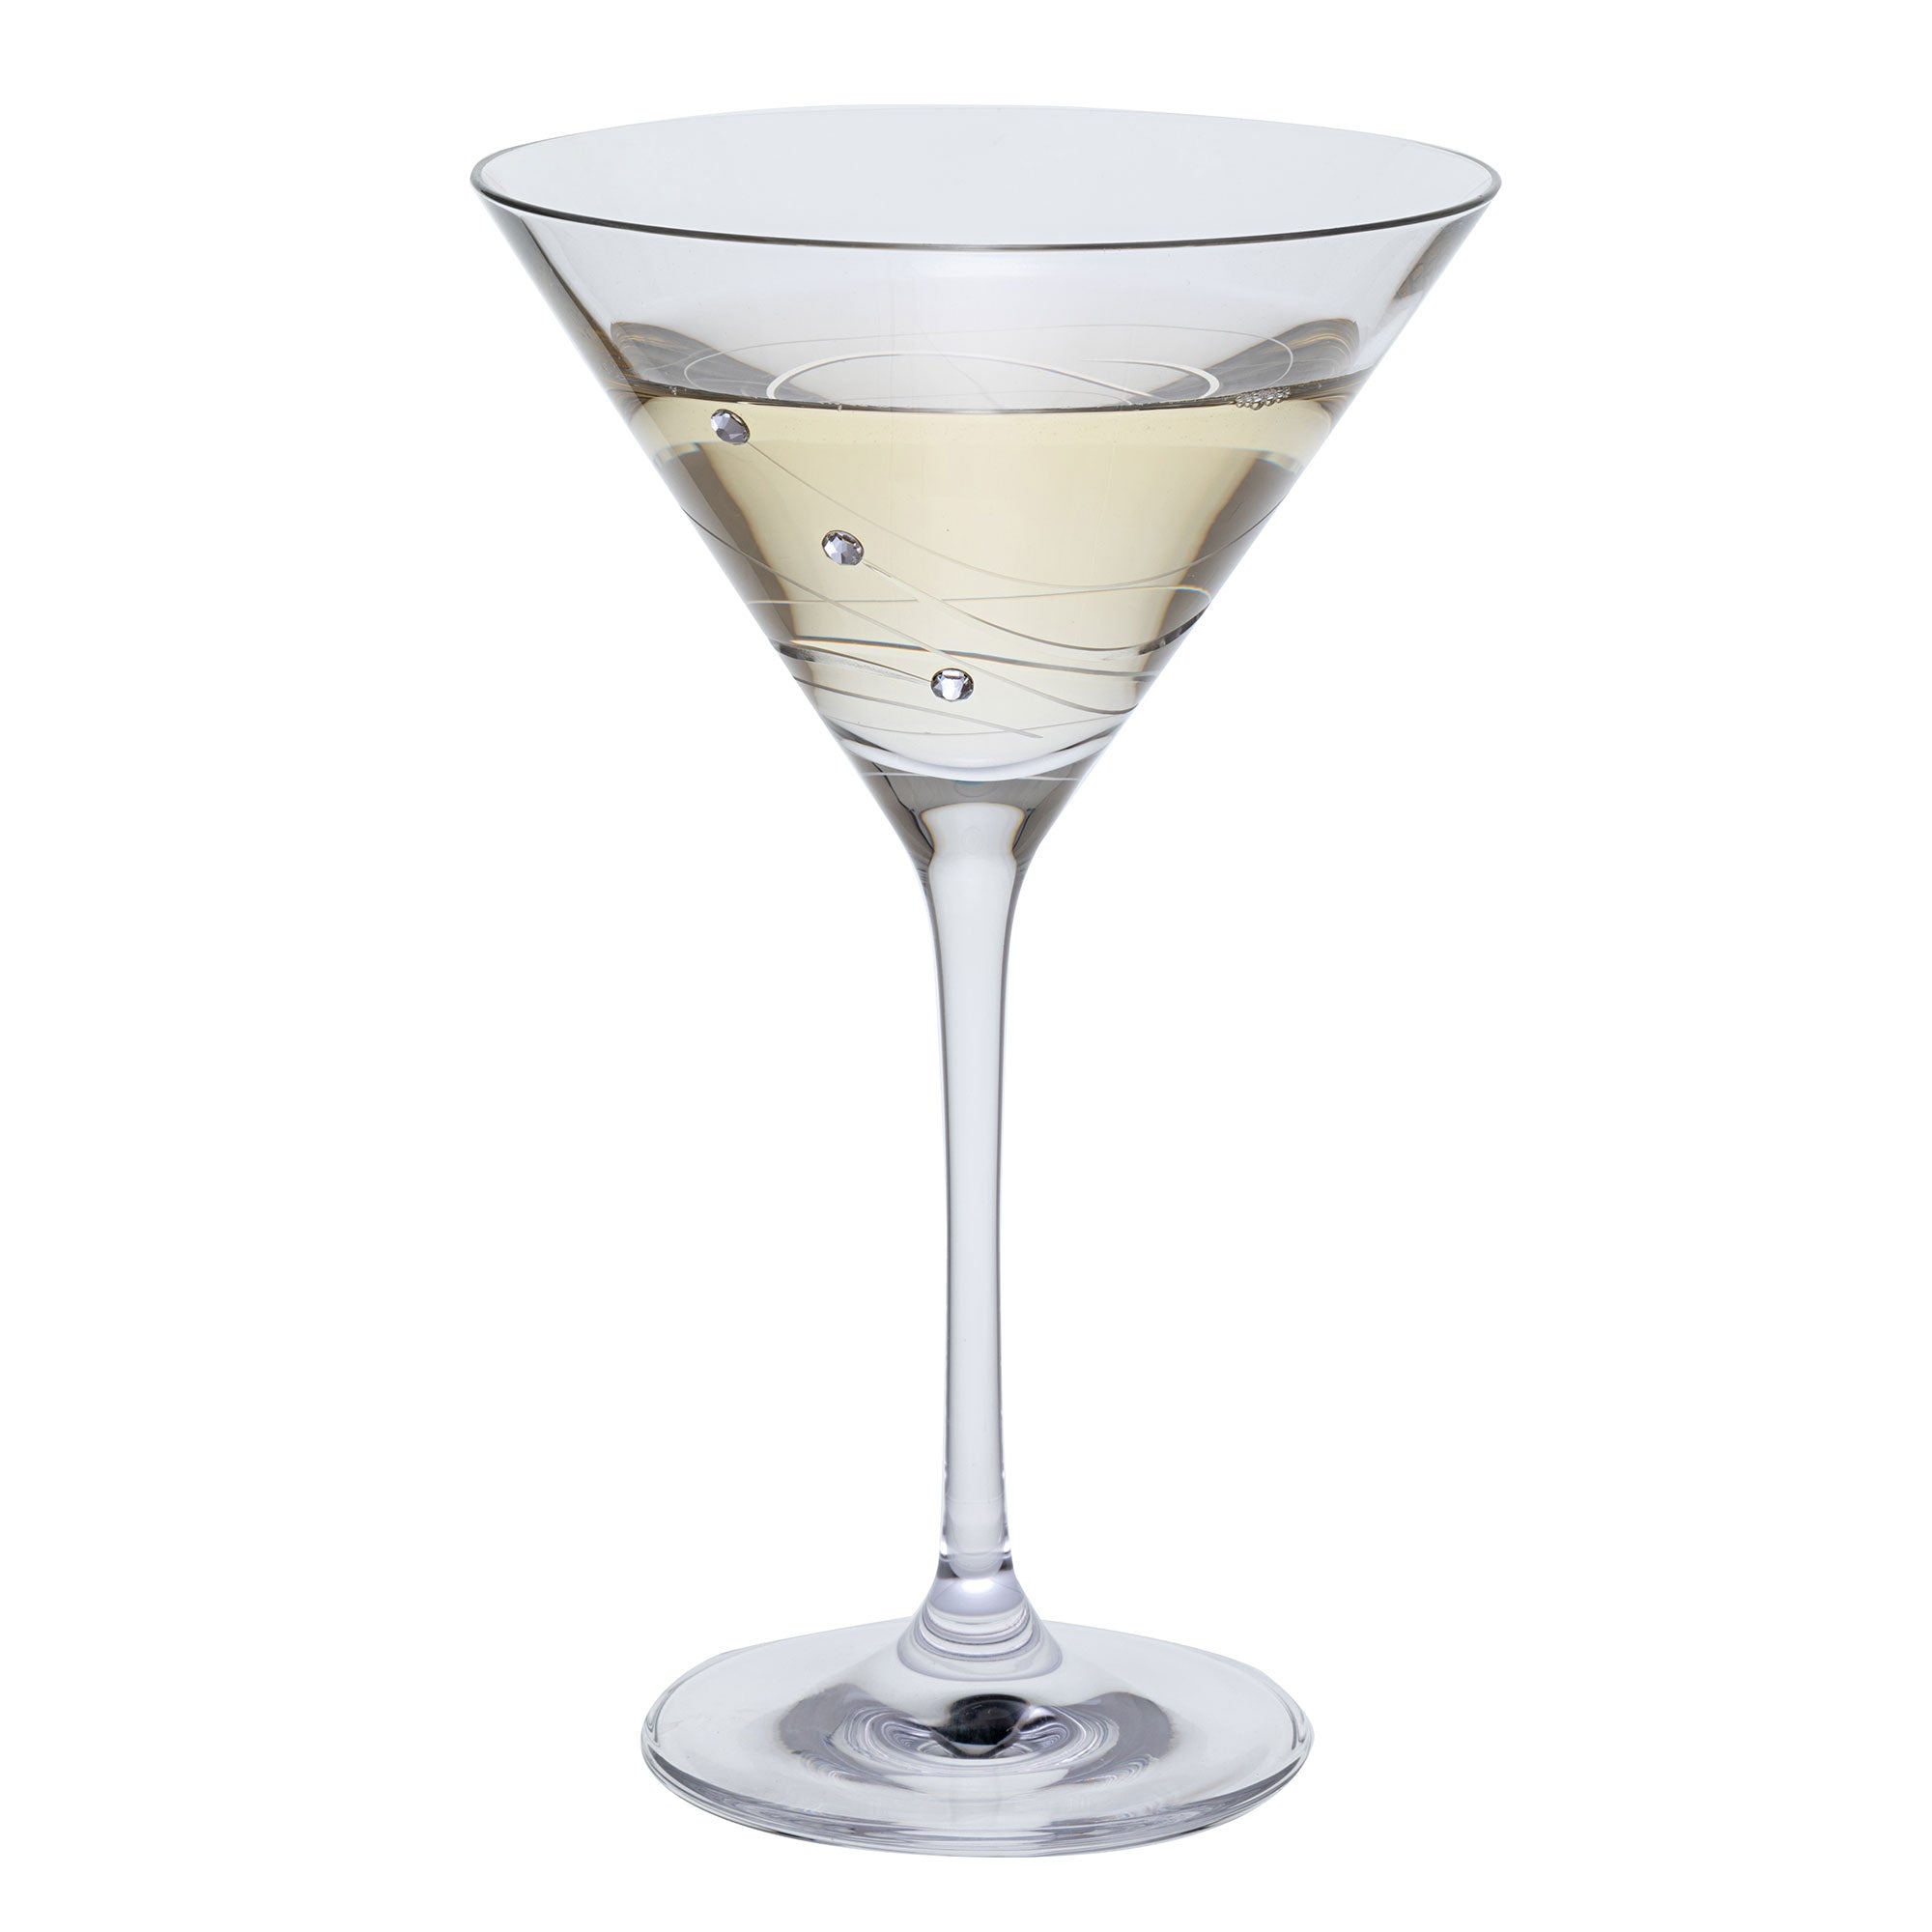 Dartington Glitz - Set of 2 Martini Glasses